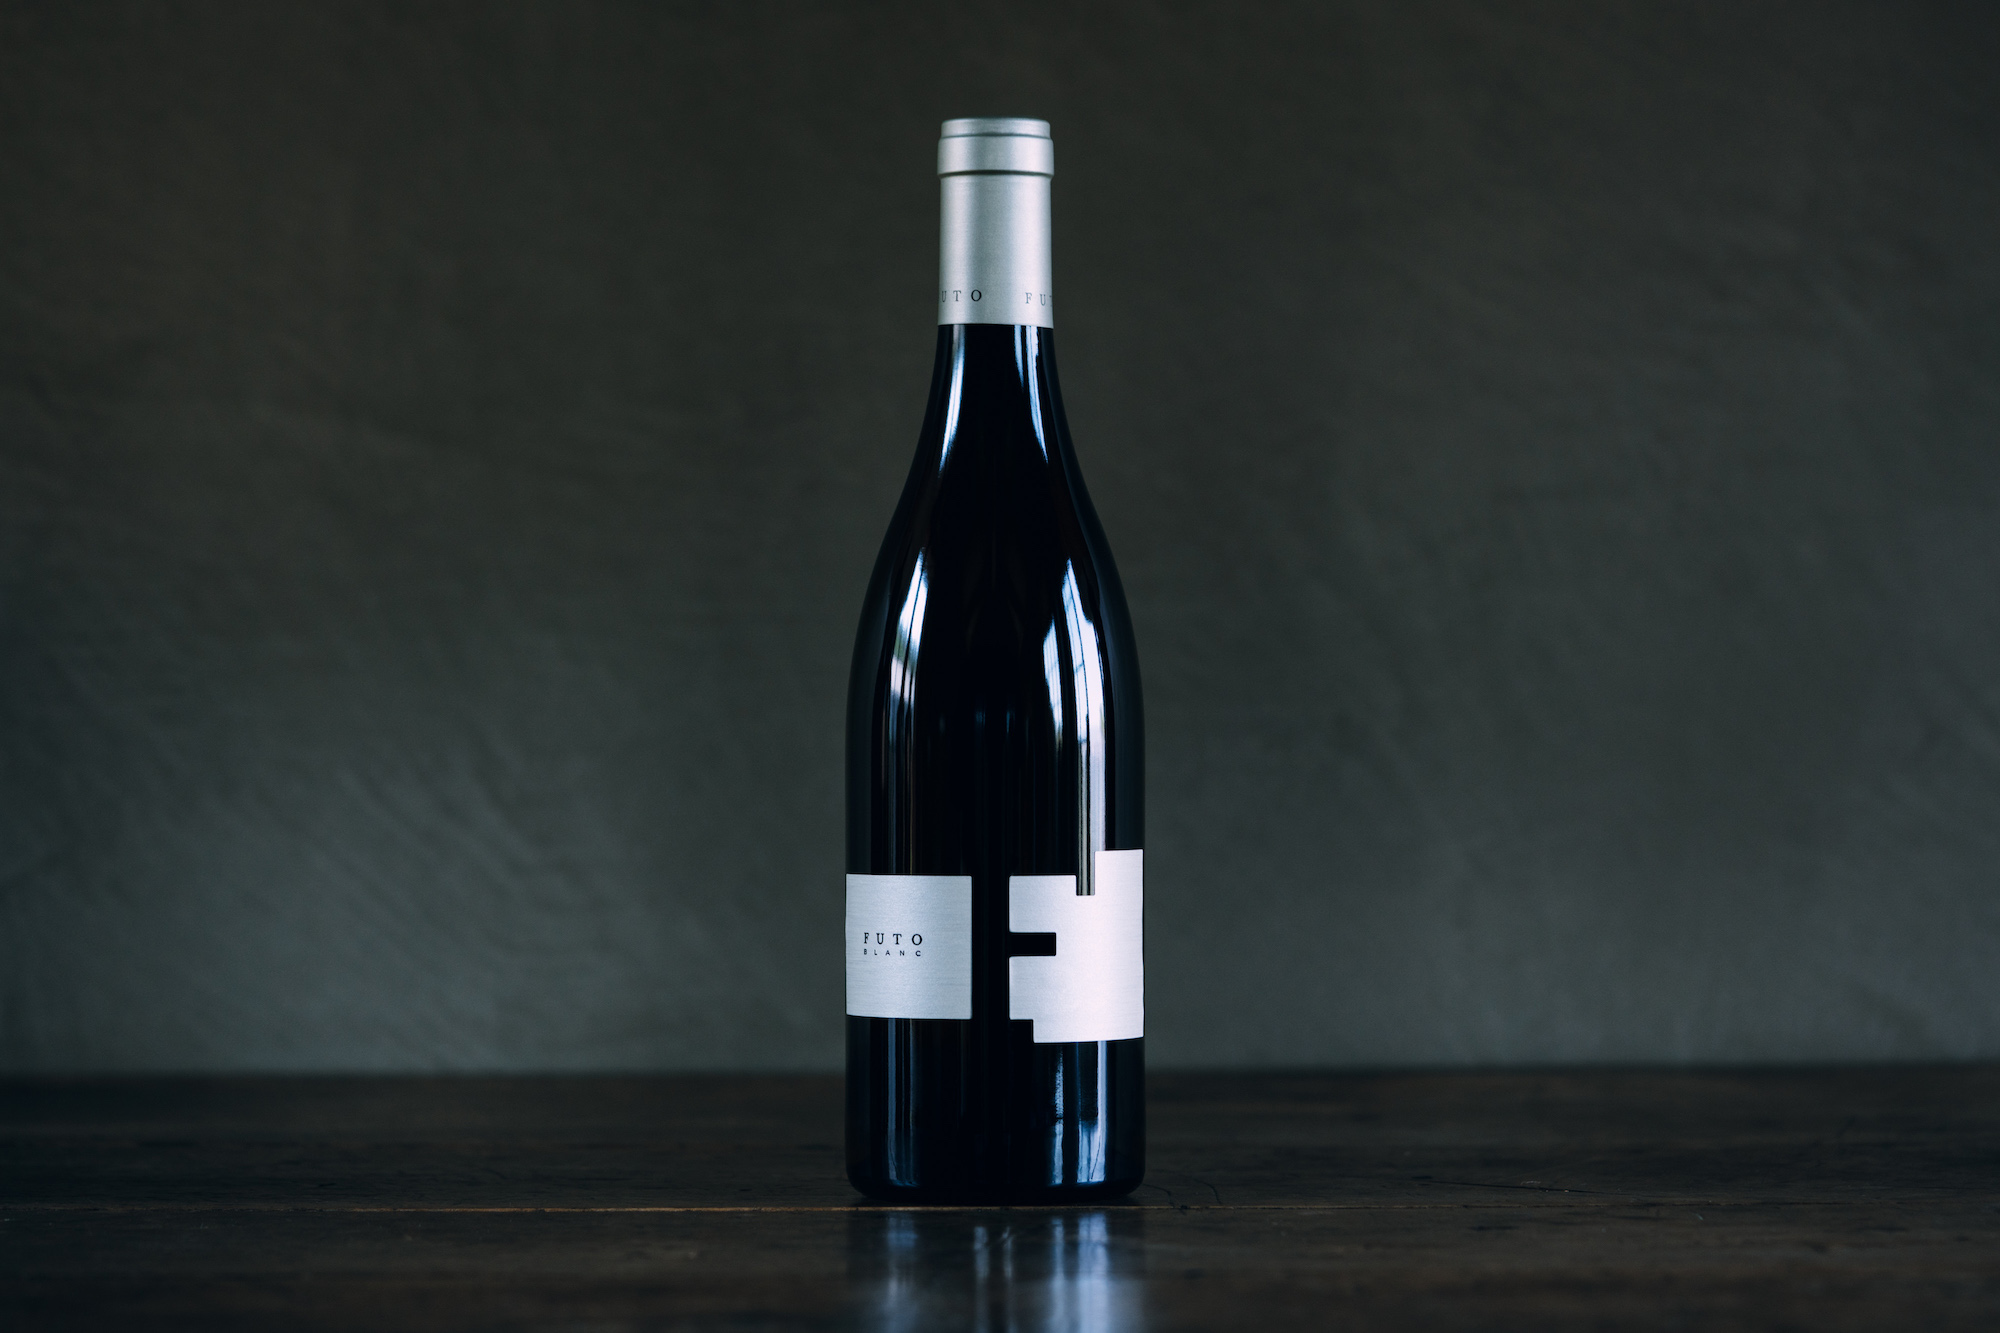 Futo Wines - The FUTO Blanc - A citrus and liquid mineral coalescence.